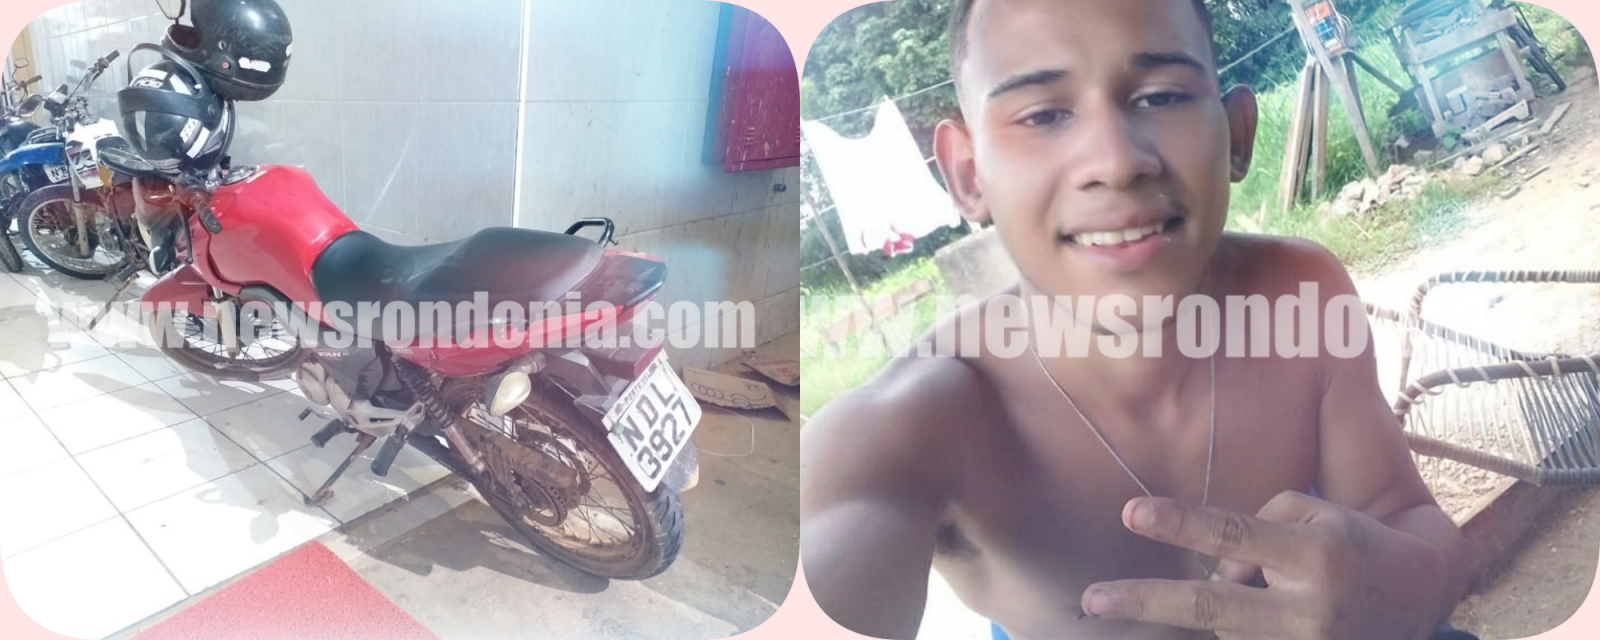 ATUALIZADA: Polícia identifica suspeito de roubo morto em confronto com a polícia - News Rondônia